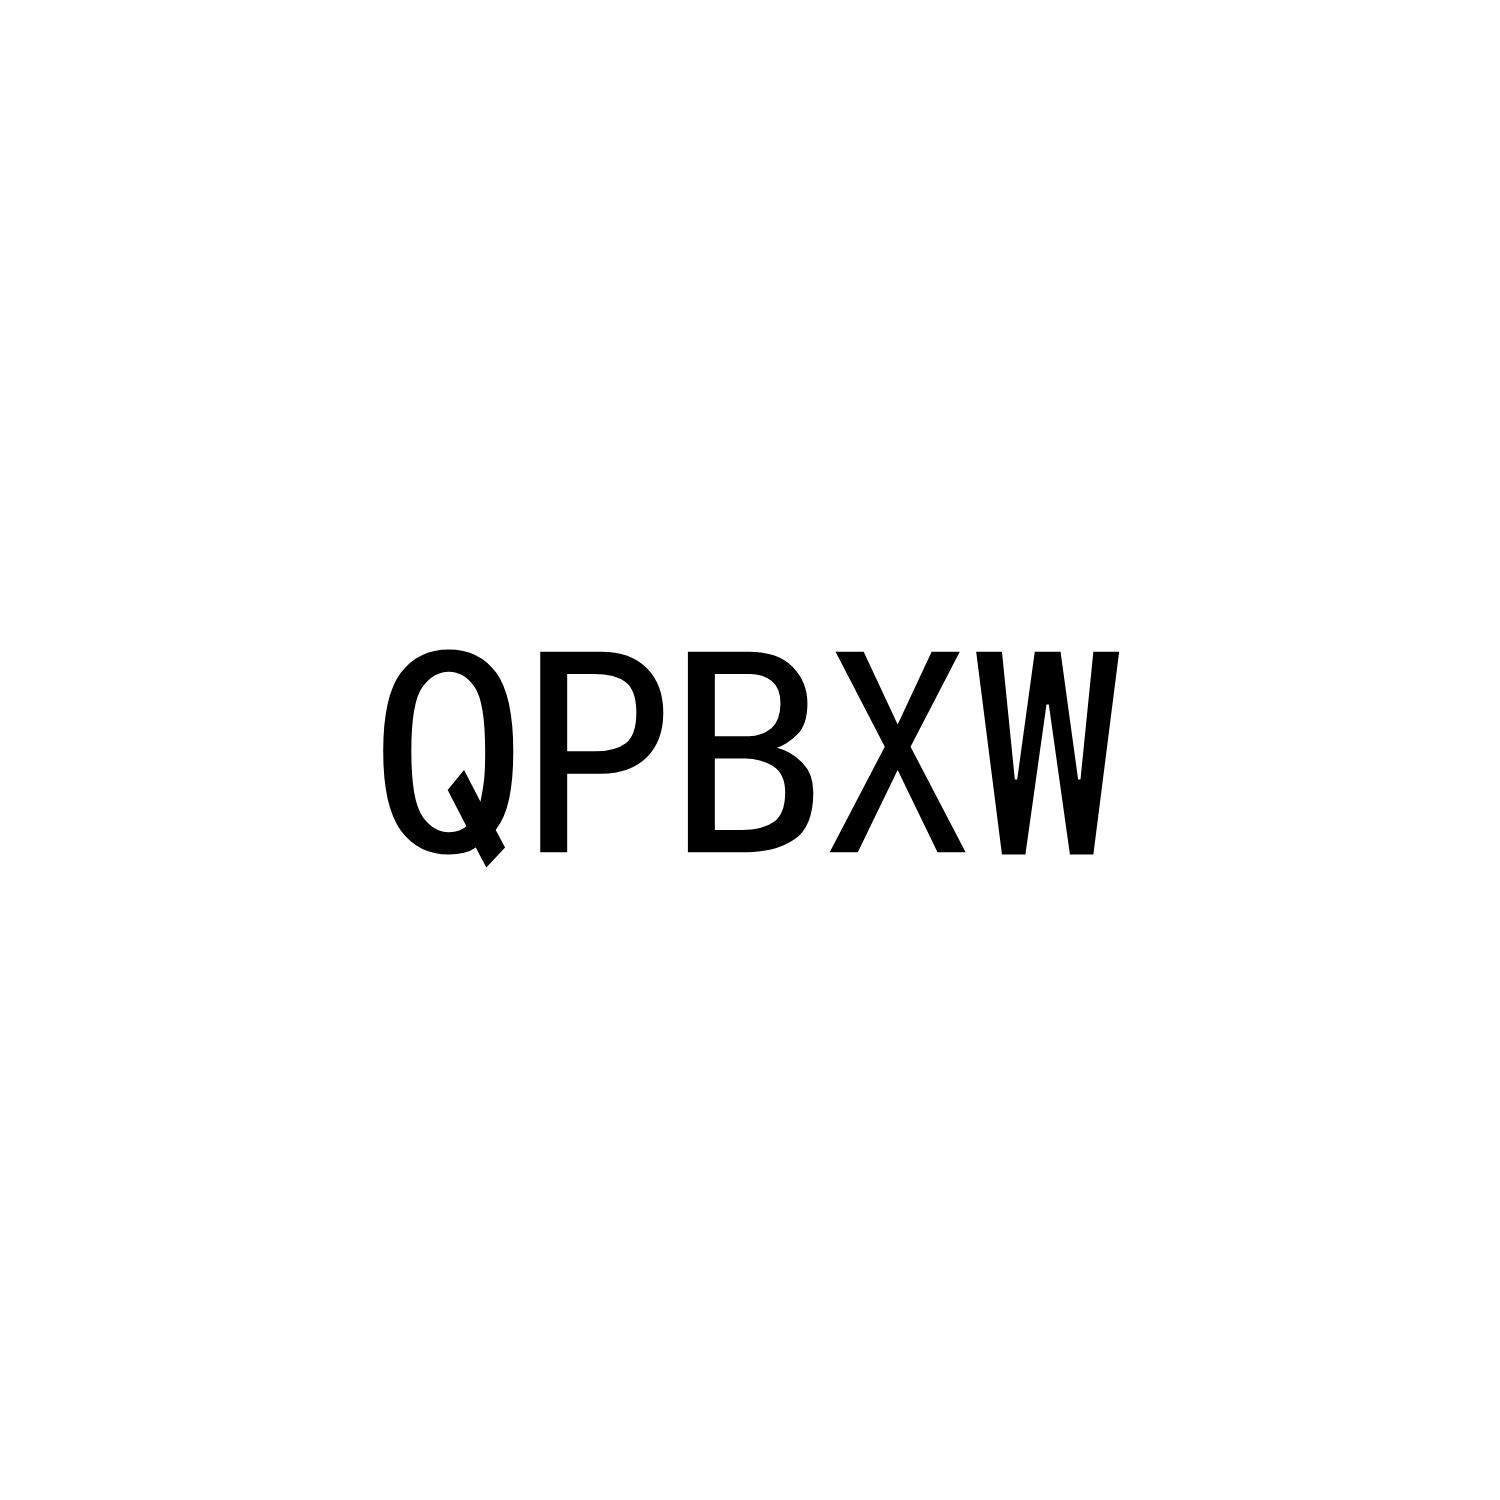 QPBXW